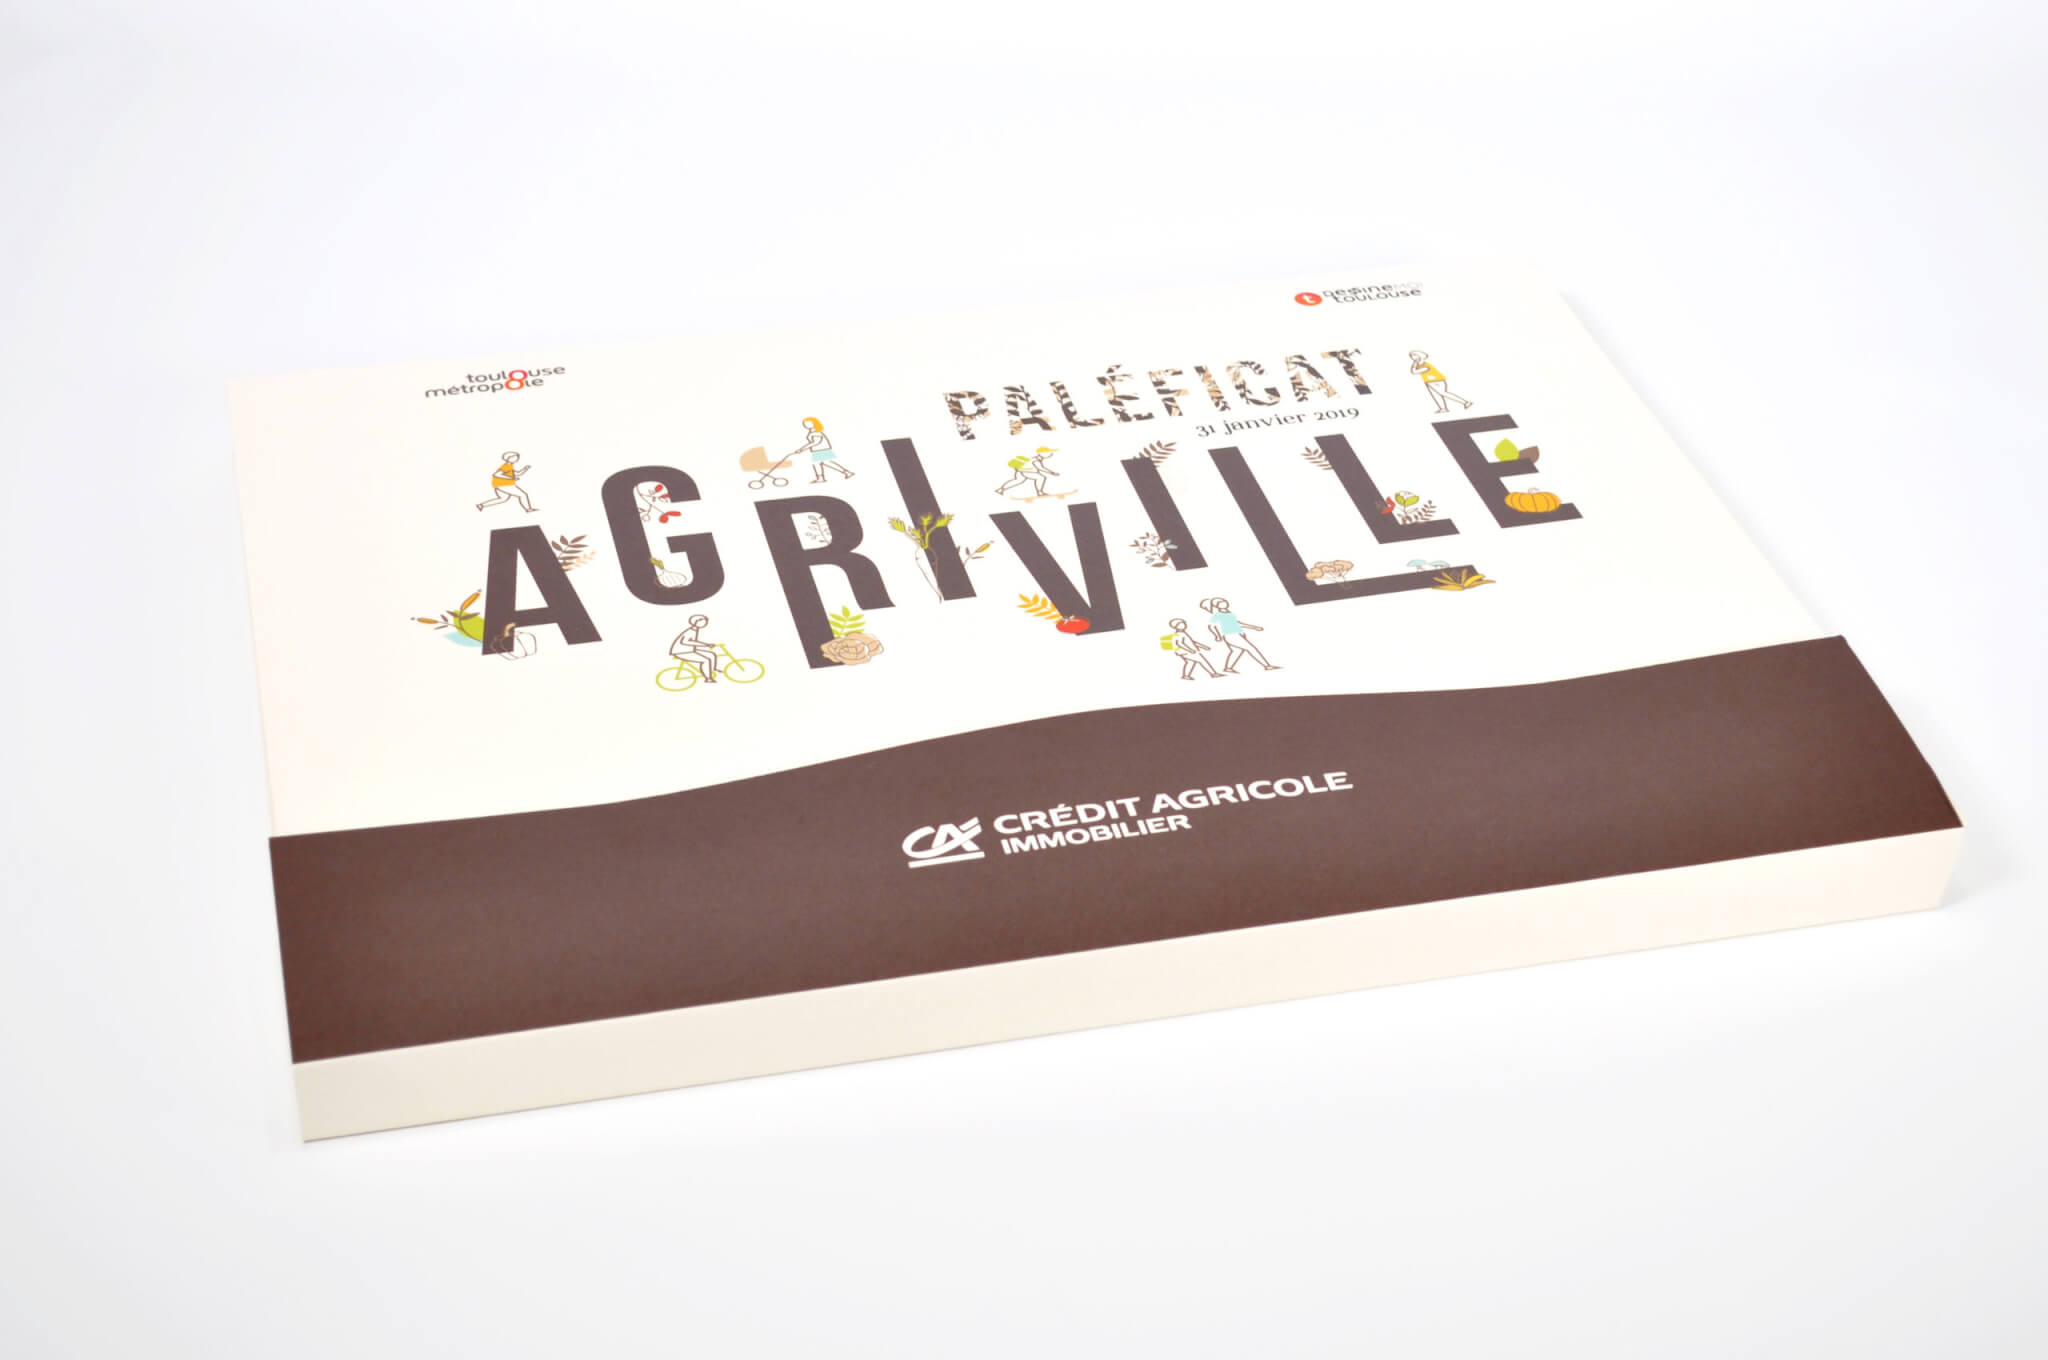 Coffret de candidature personnalisé pour réponse à appel d'offre - Lauréat du concours - Agriville de Crédit Agricole